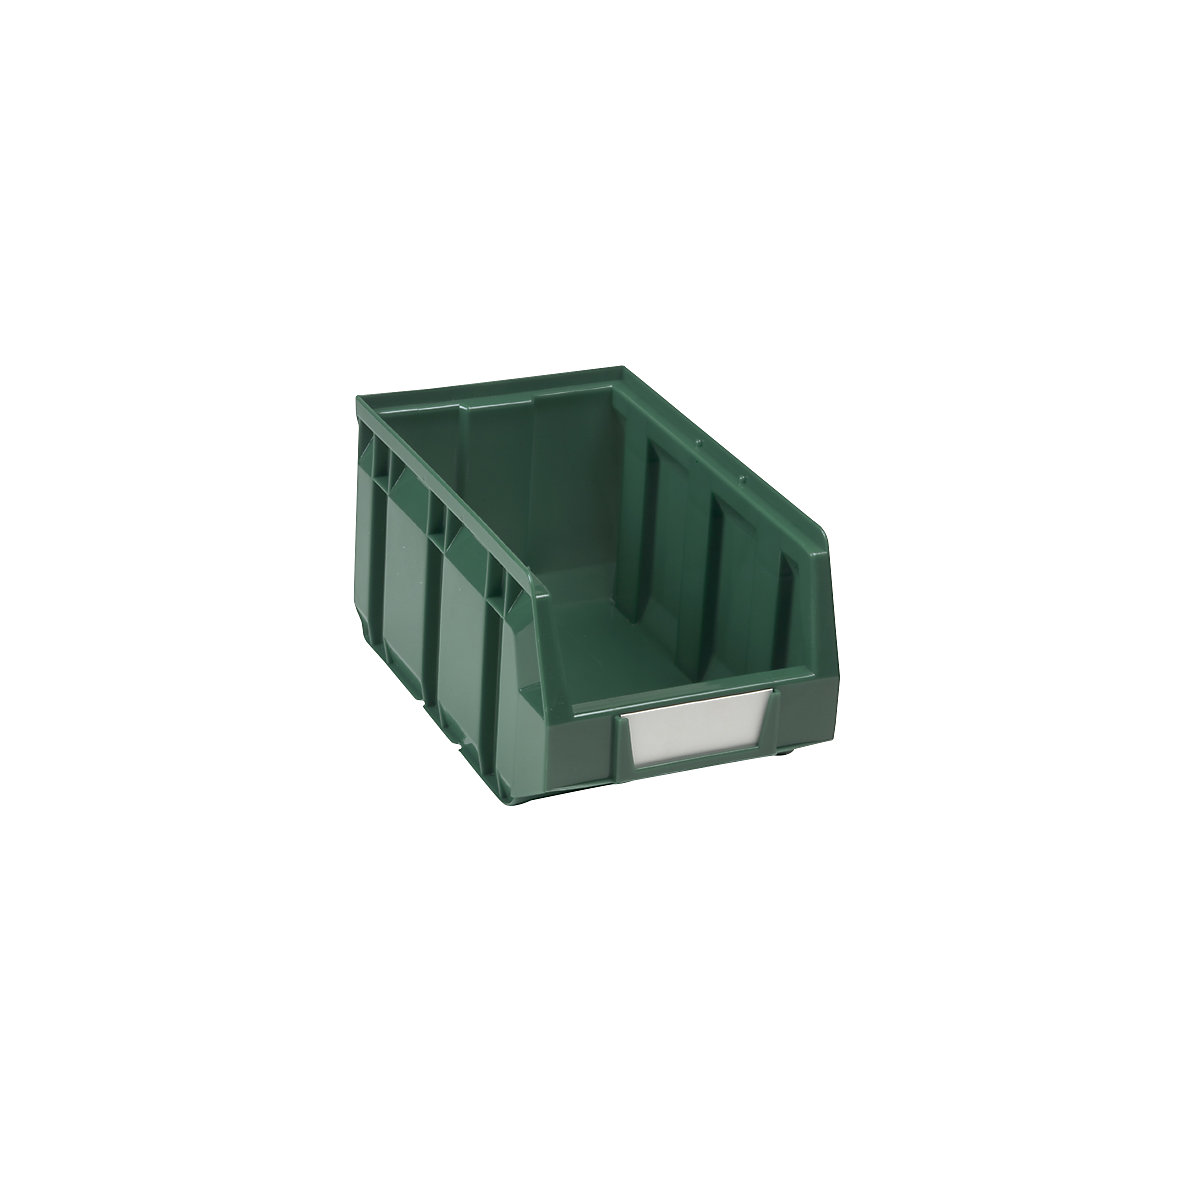 Caixa de armazenagem à vista em polietileno, CxLxA 237 x 144 x 123 mm, verde, embalagem 38 unid.-9